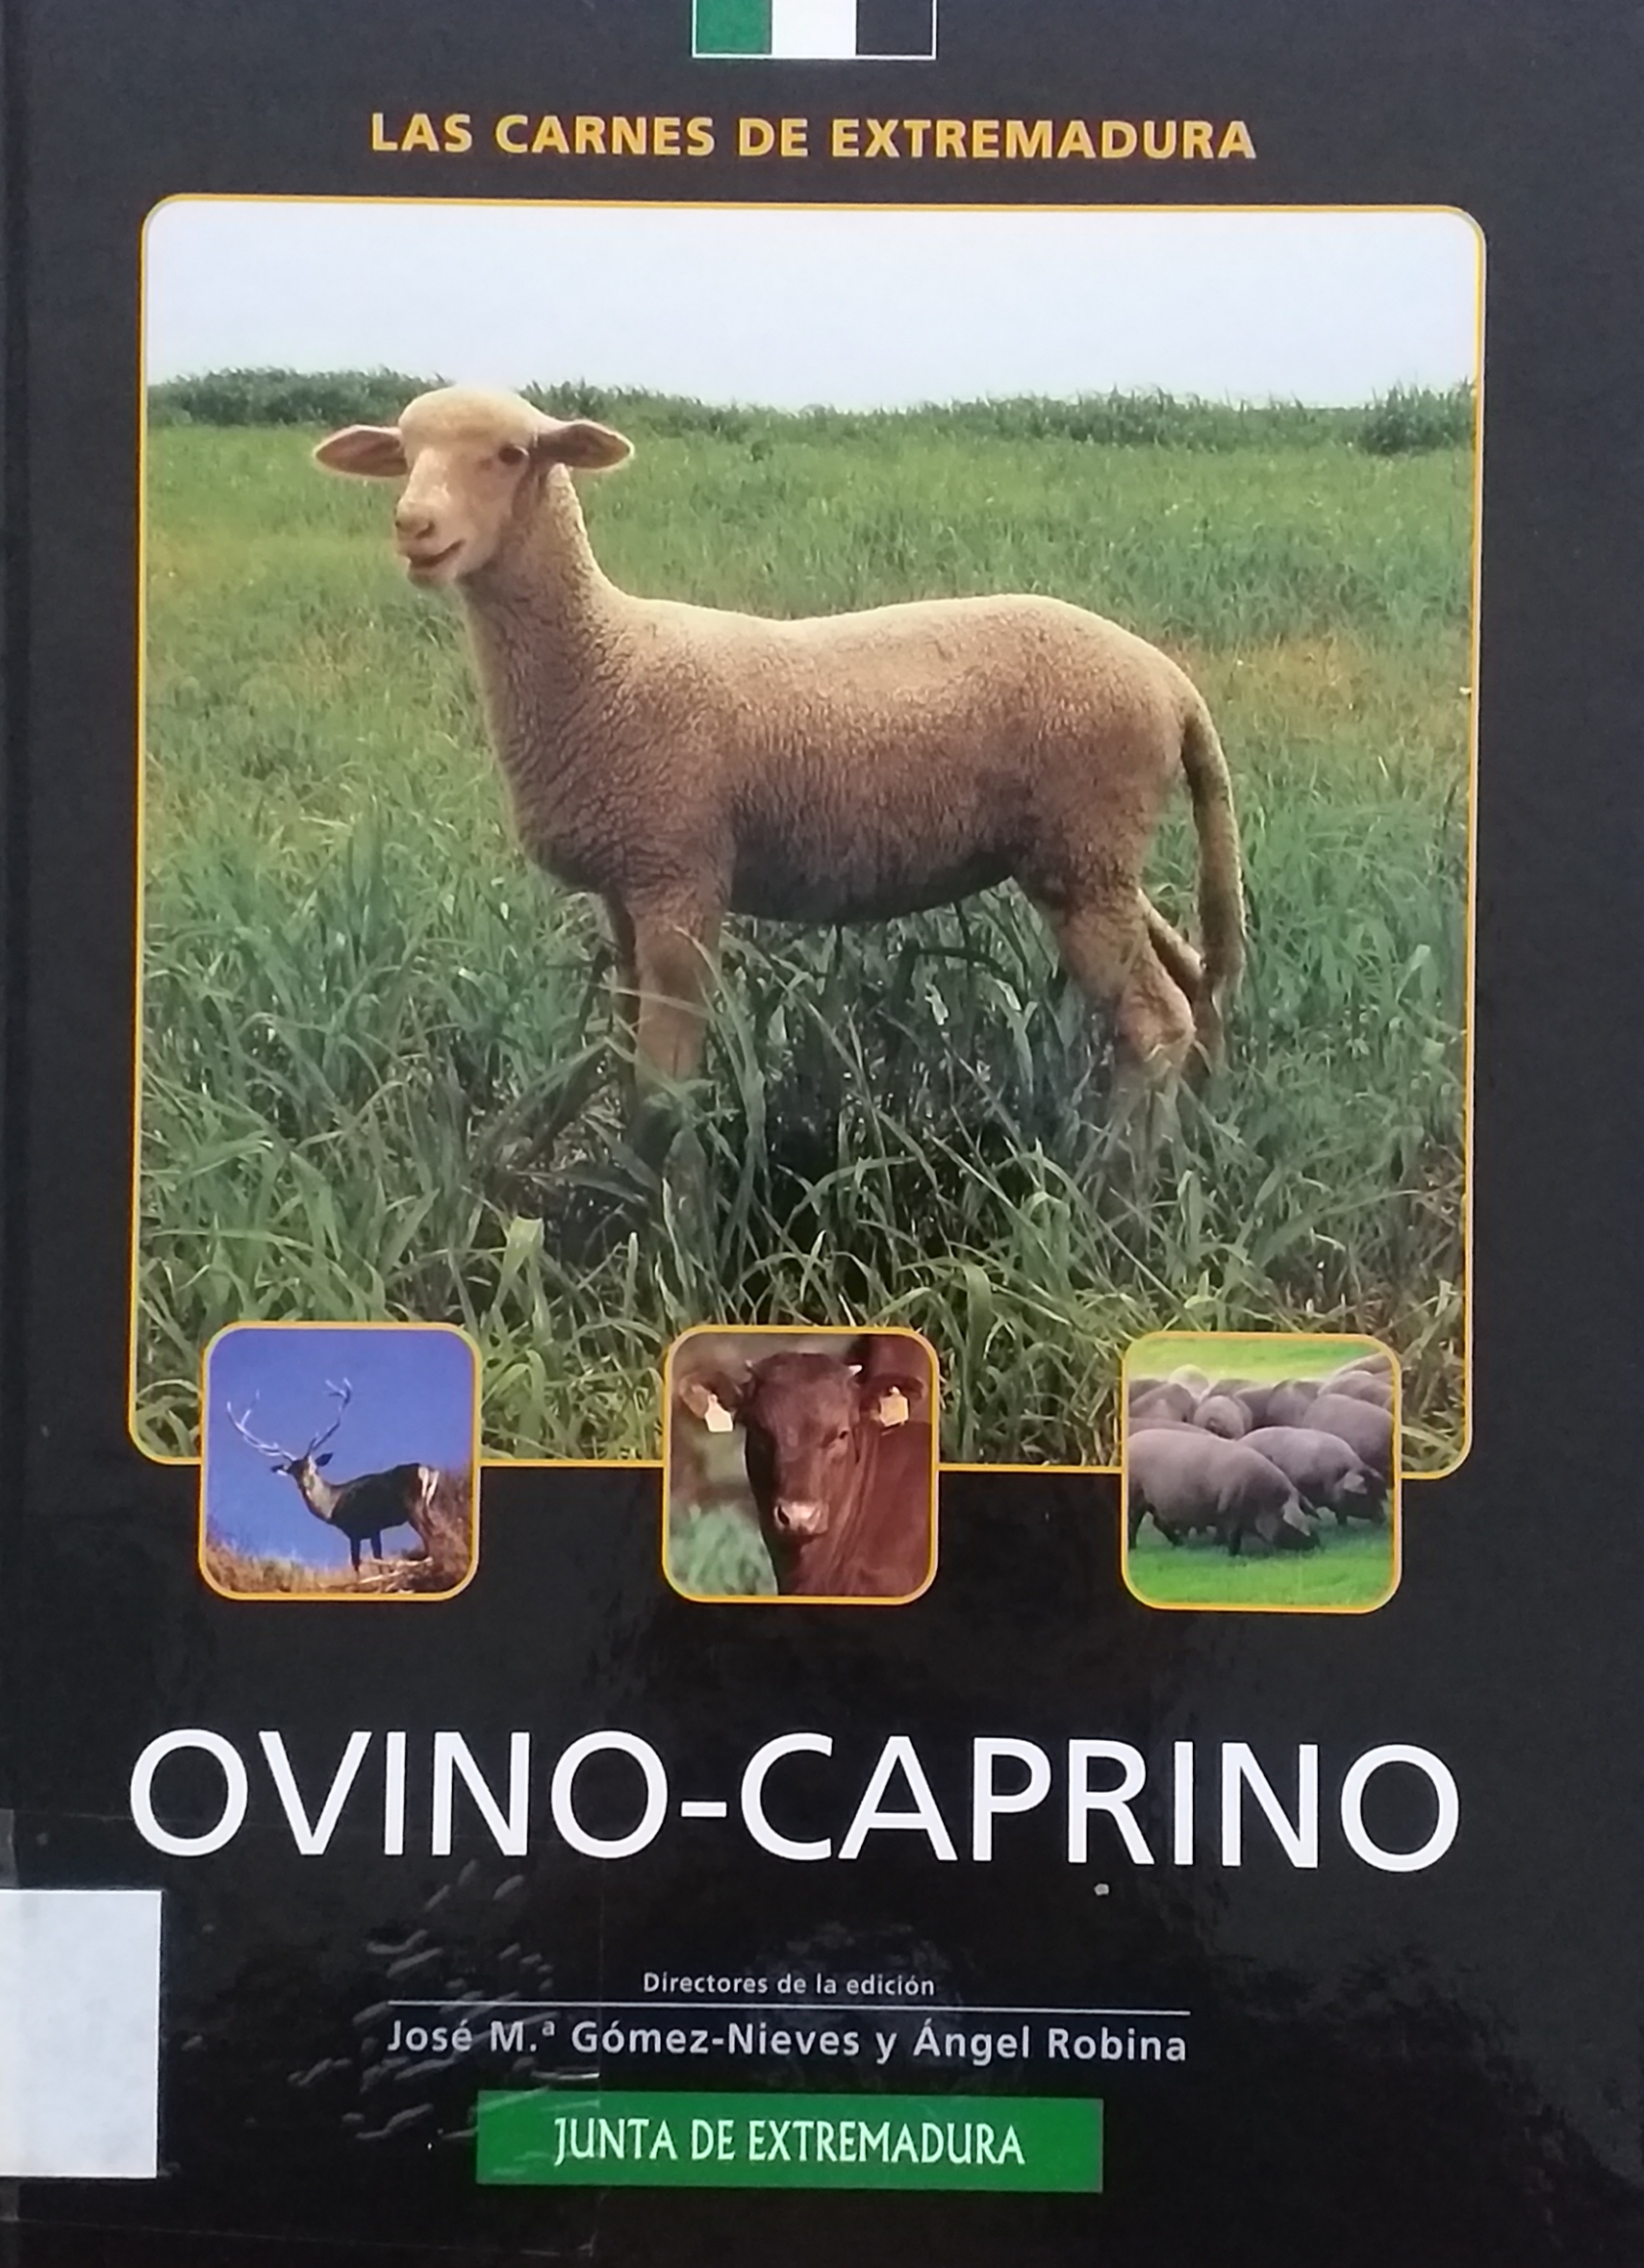 Imagen de portada del libro Ovino y caprino